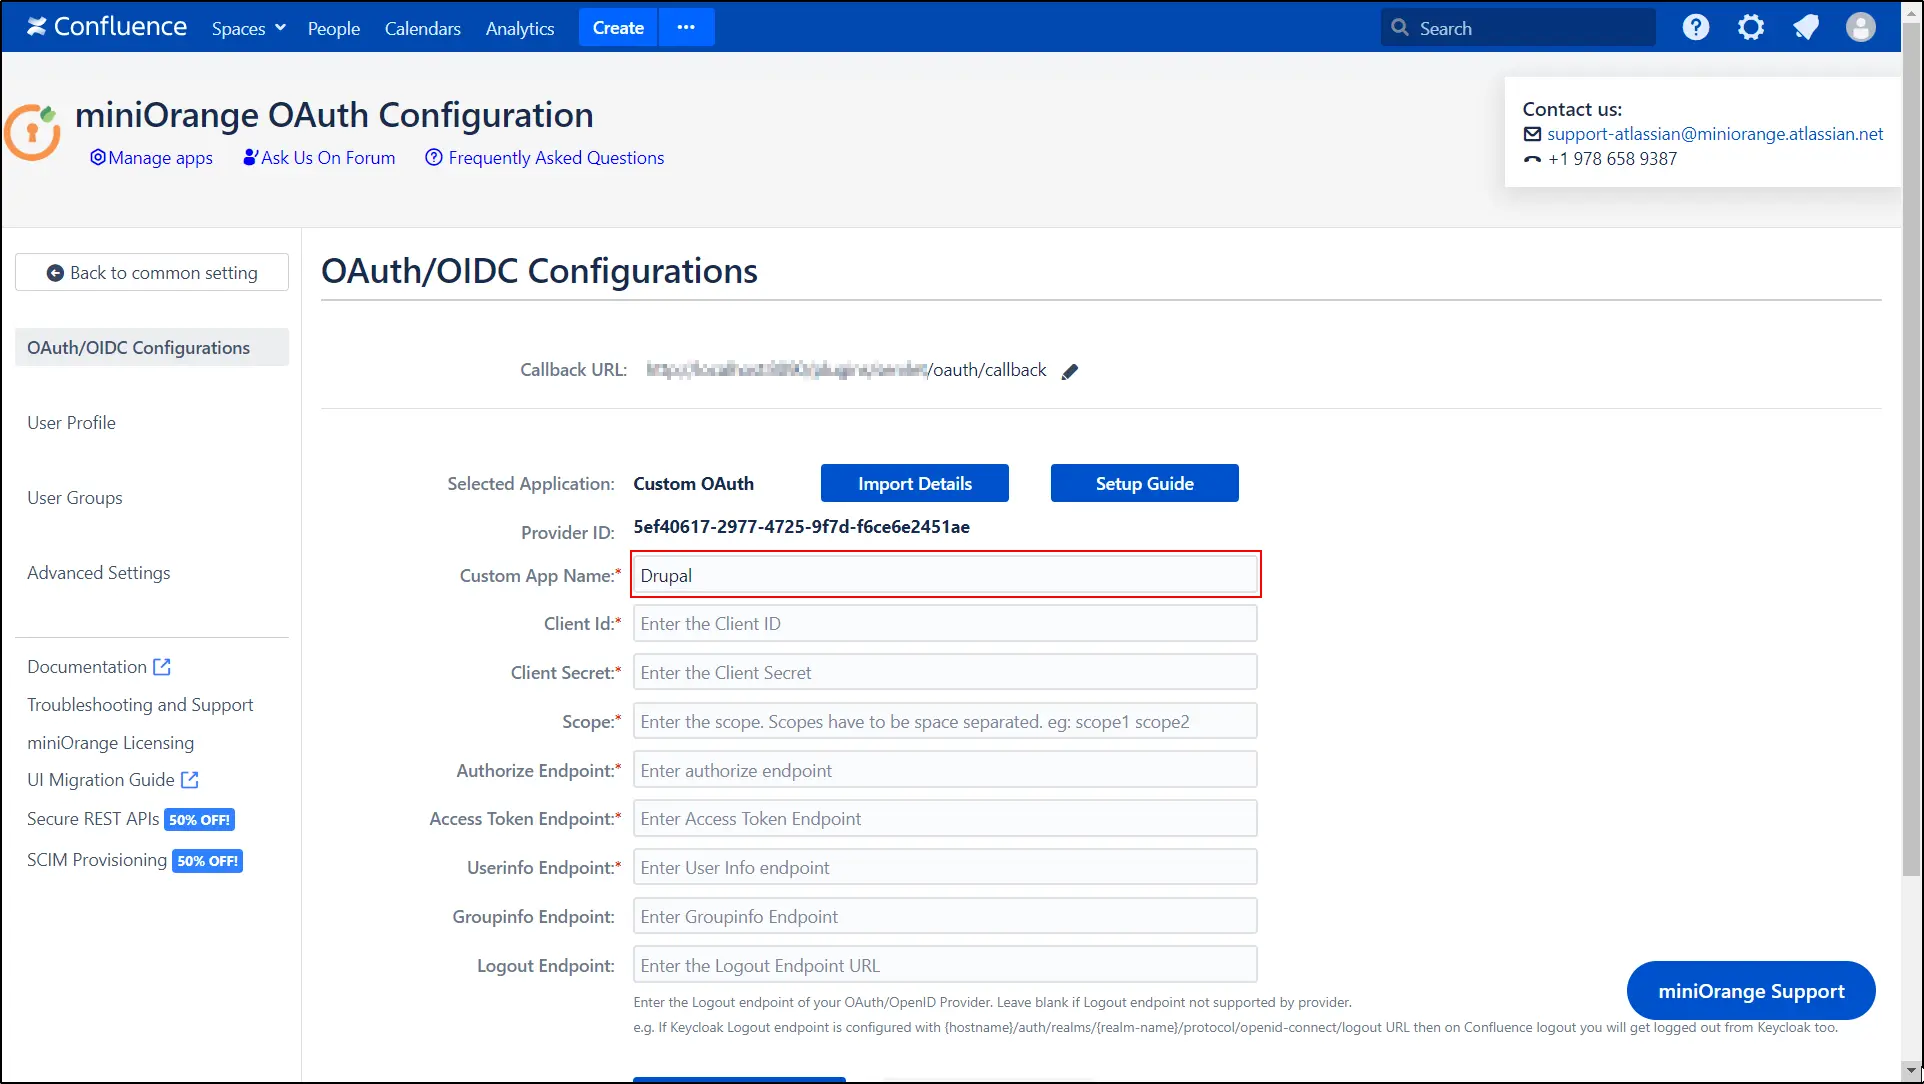 Fournisseur Drupal Confluence OAuth OIDC - Entrez le nom de l'application